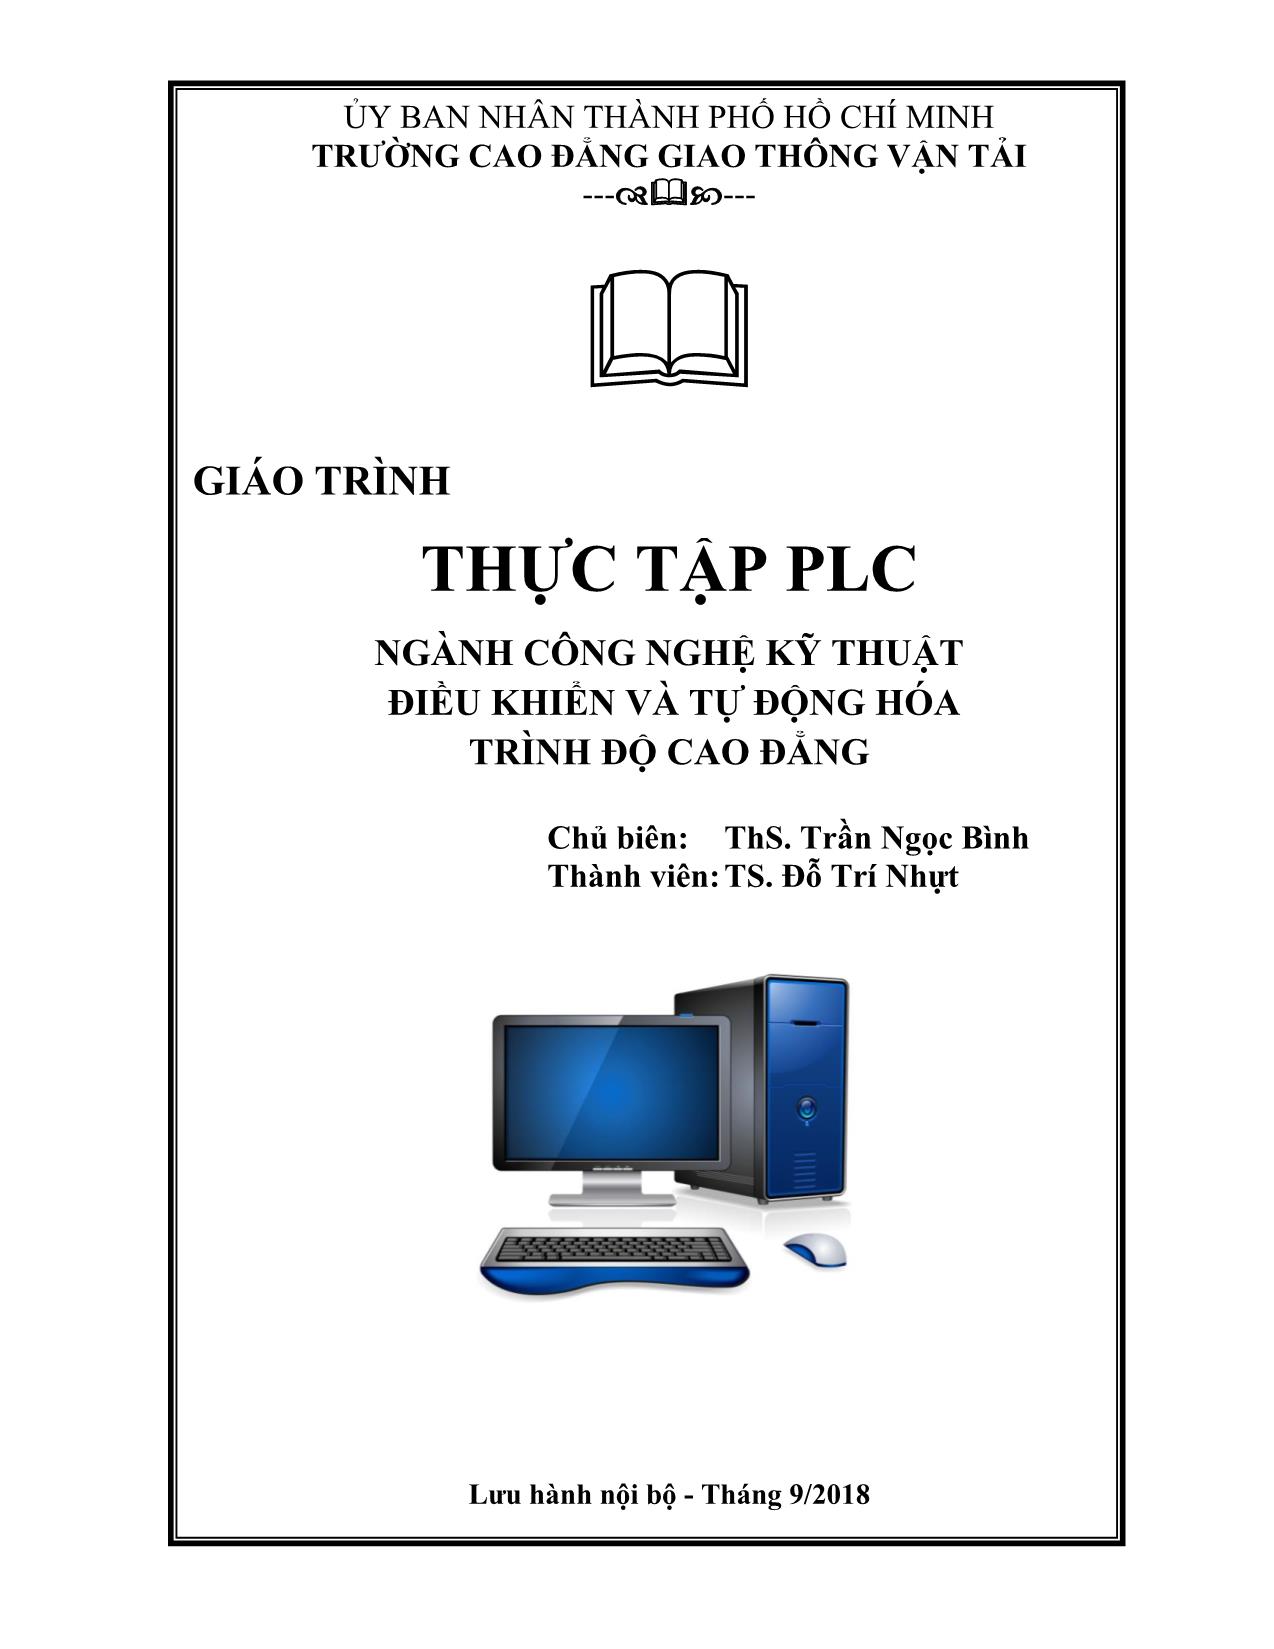 Giáo trình Công nghệ kỹ thuật điều khiển và tự động hóa - Thực tập PLC trang 2